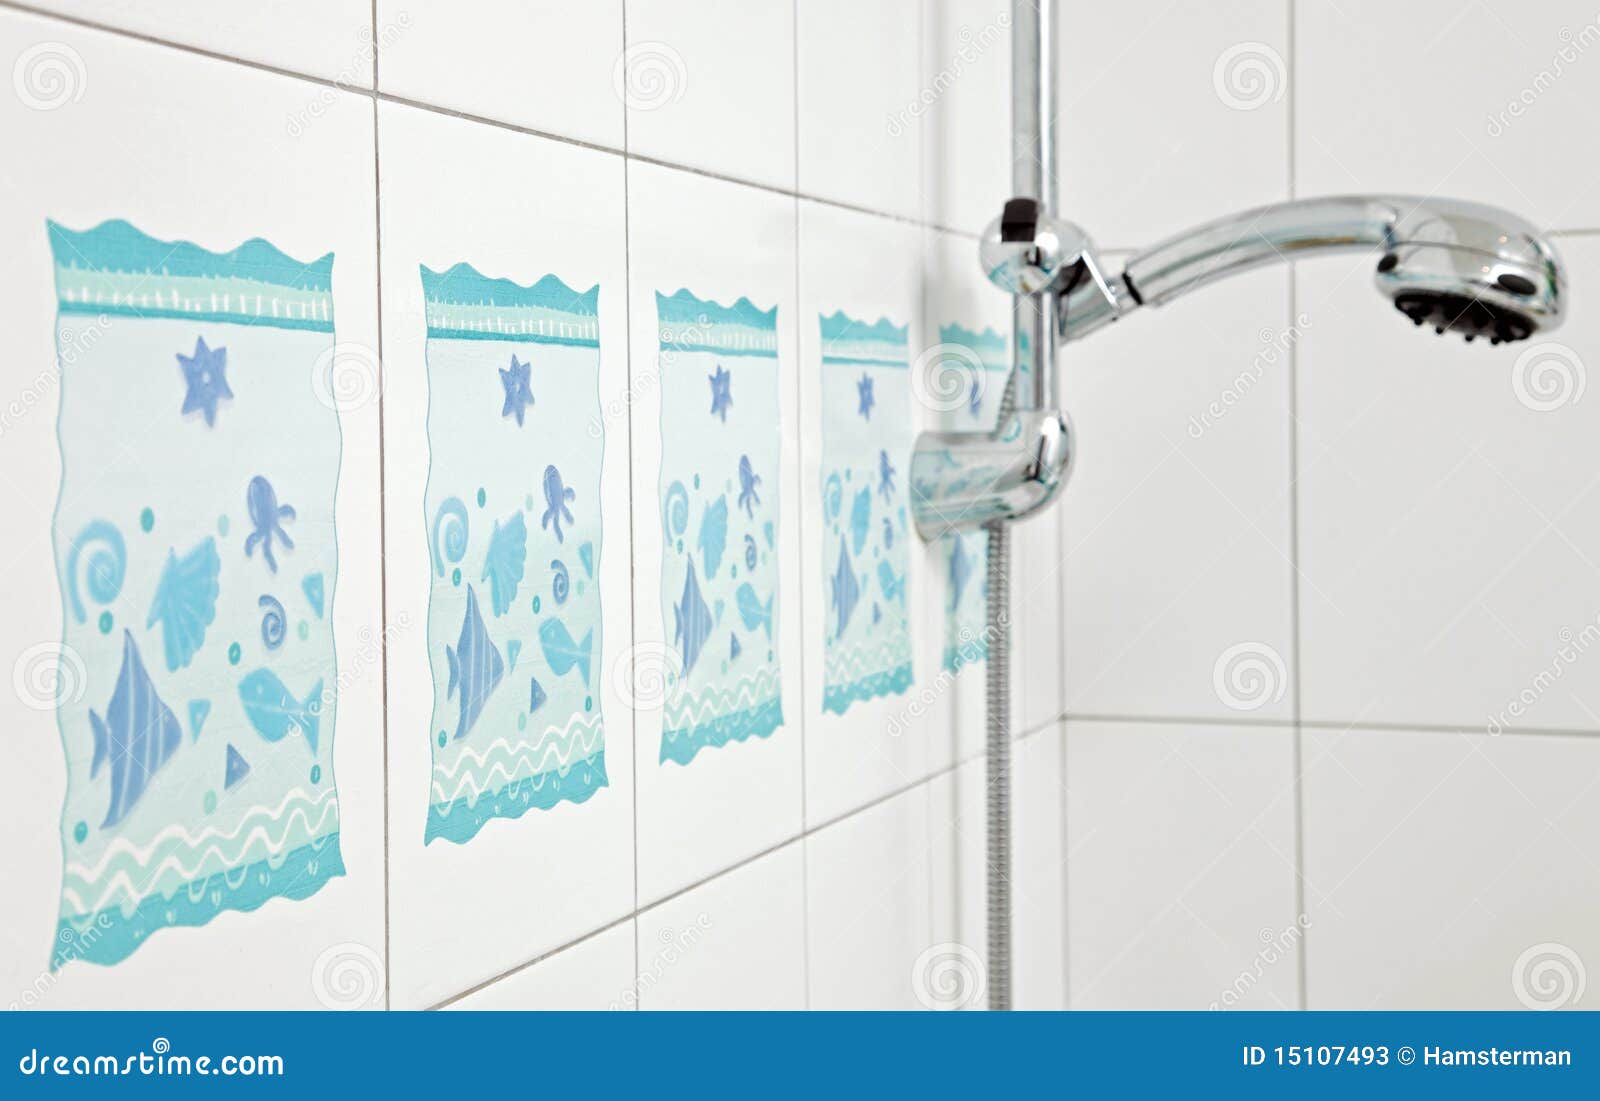 blue bathroom ceramics tile